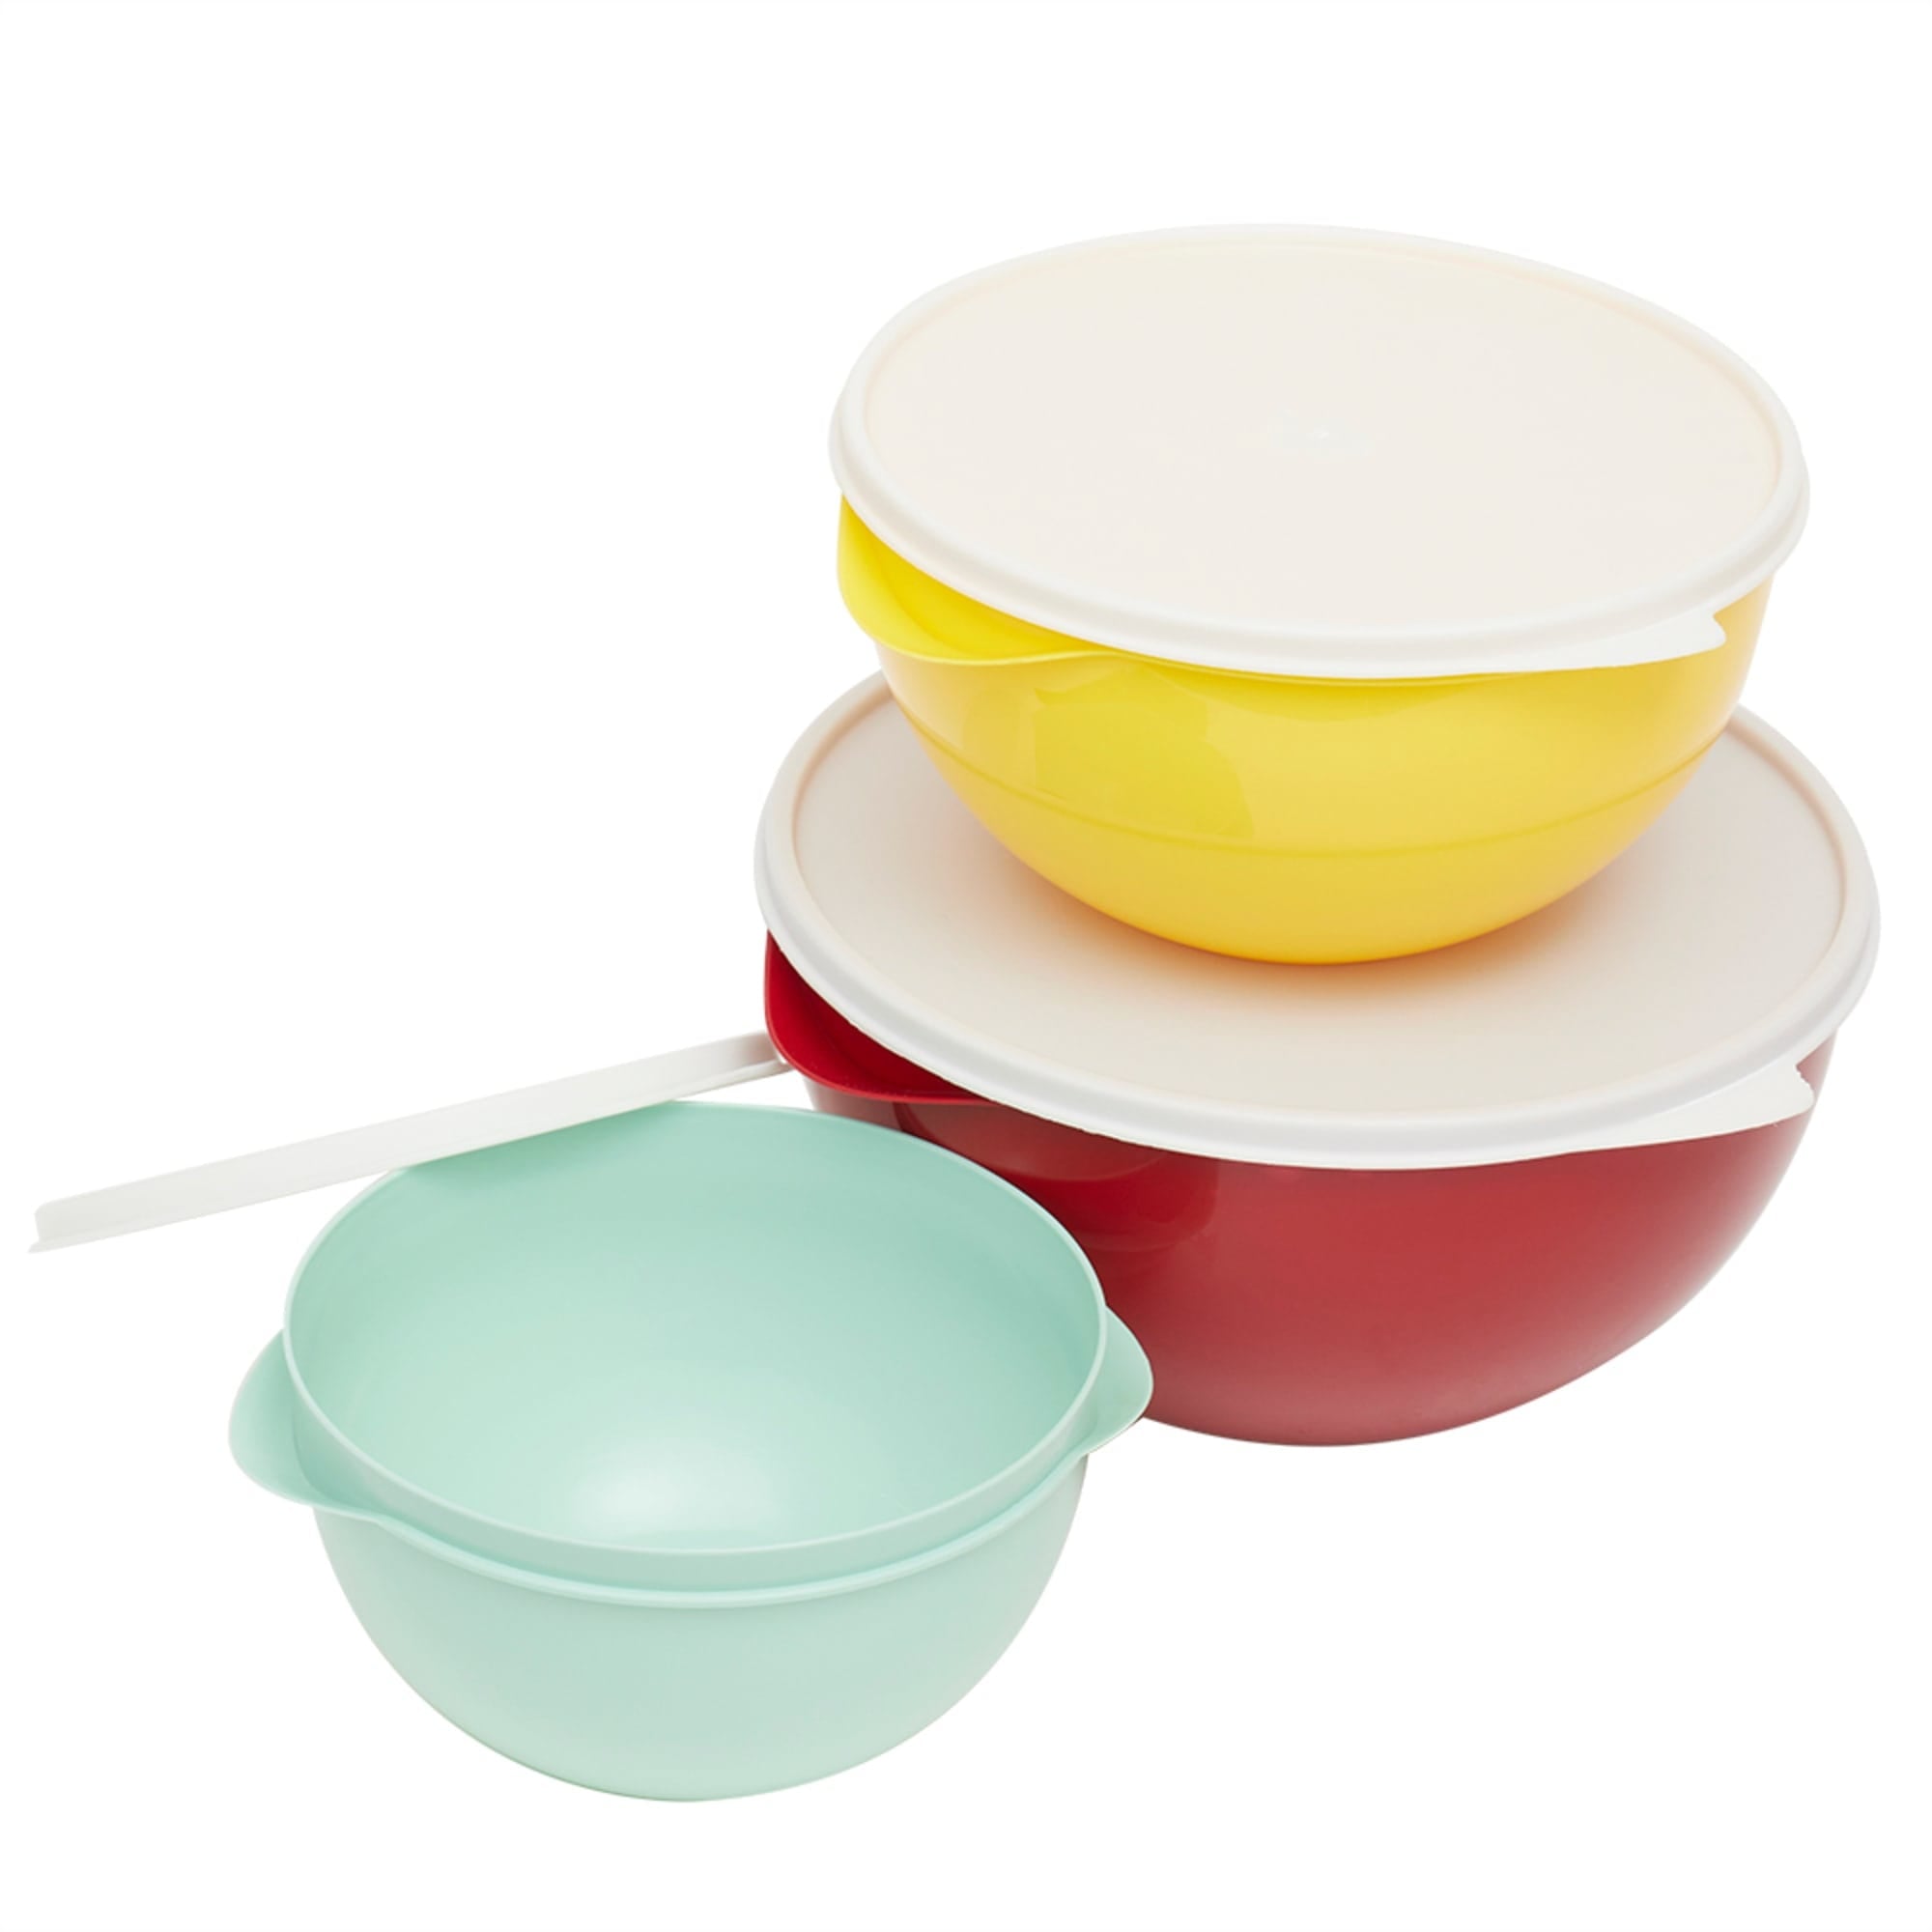 Plastic 3 Piece Nesting Bowl Set with Lids, Multi | FOOD PREP | SHOP HOME - Shop Home